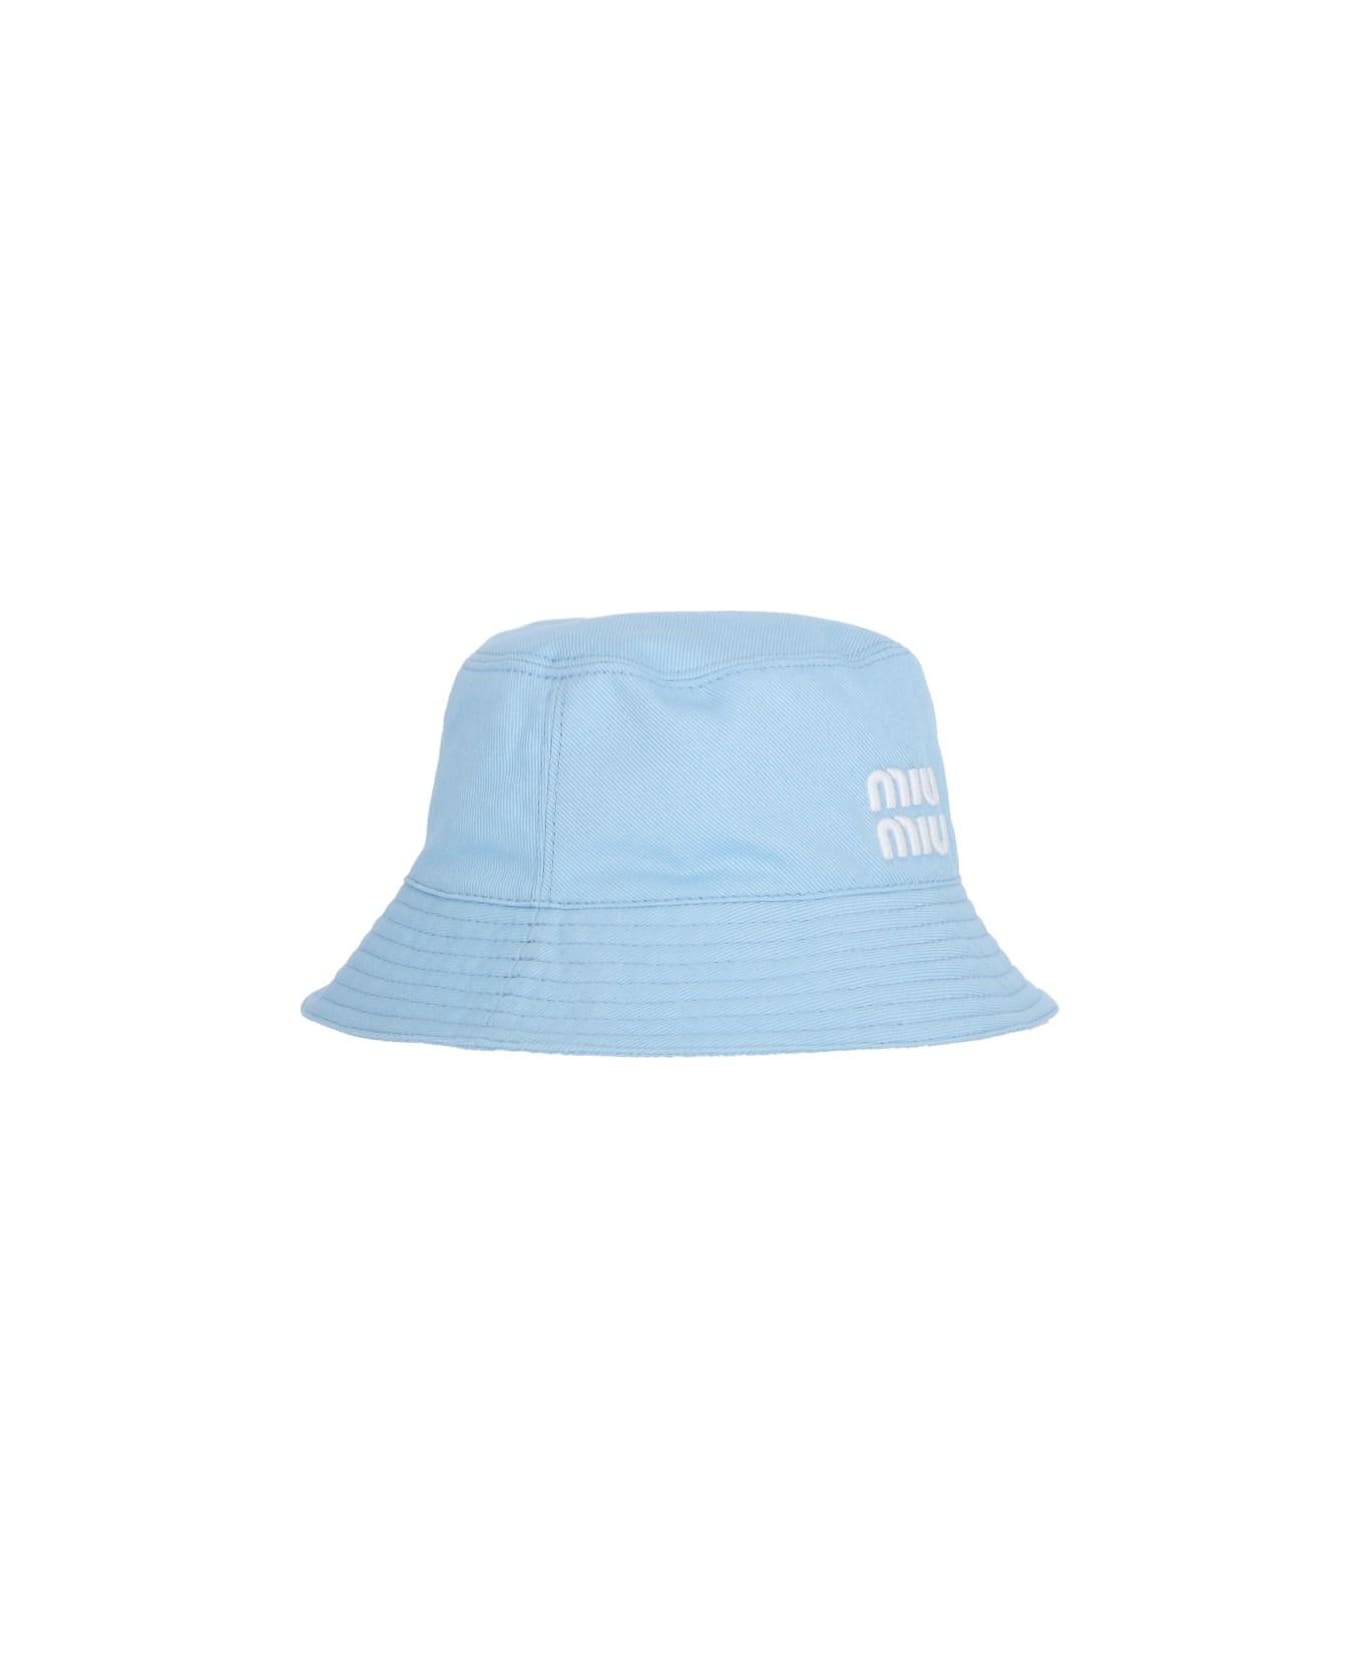 Miu Miu Logo Bucket Hat - Celeste